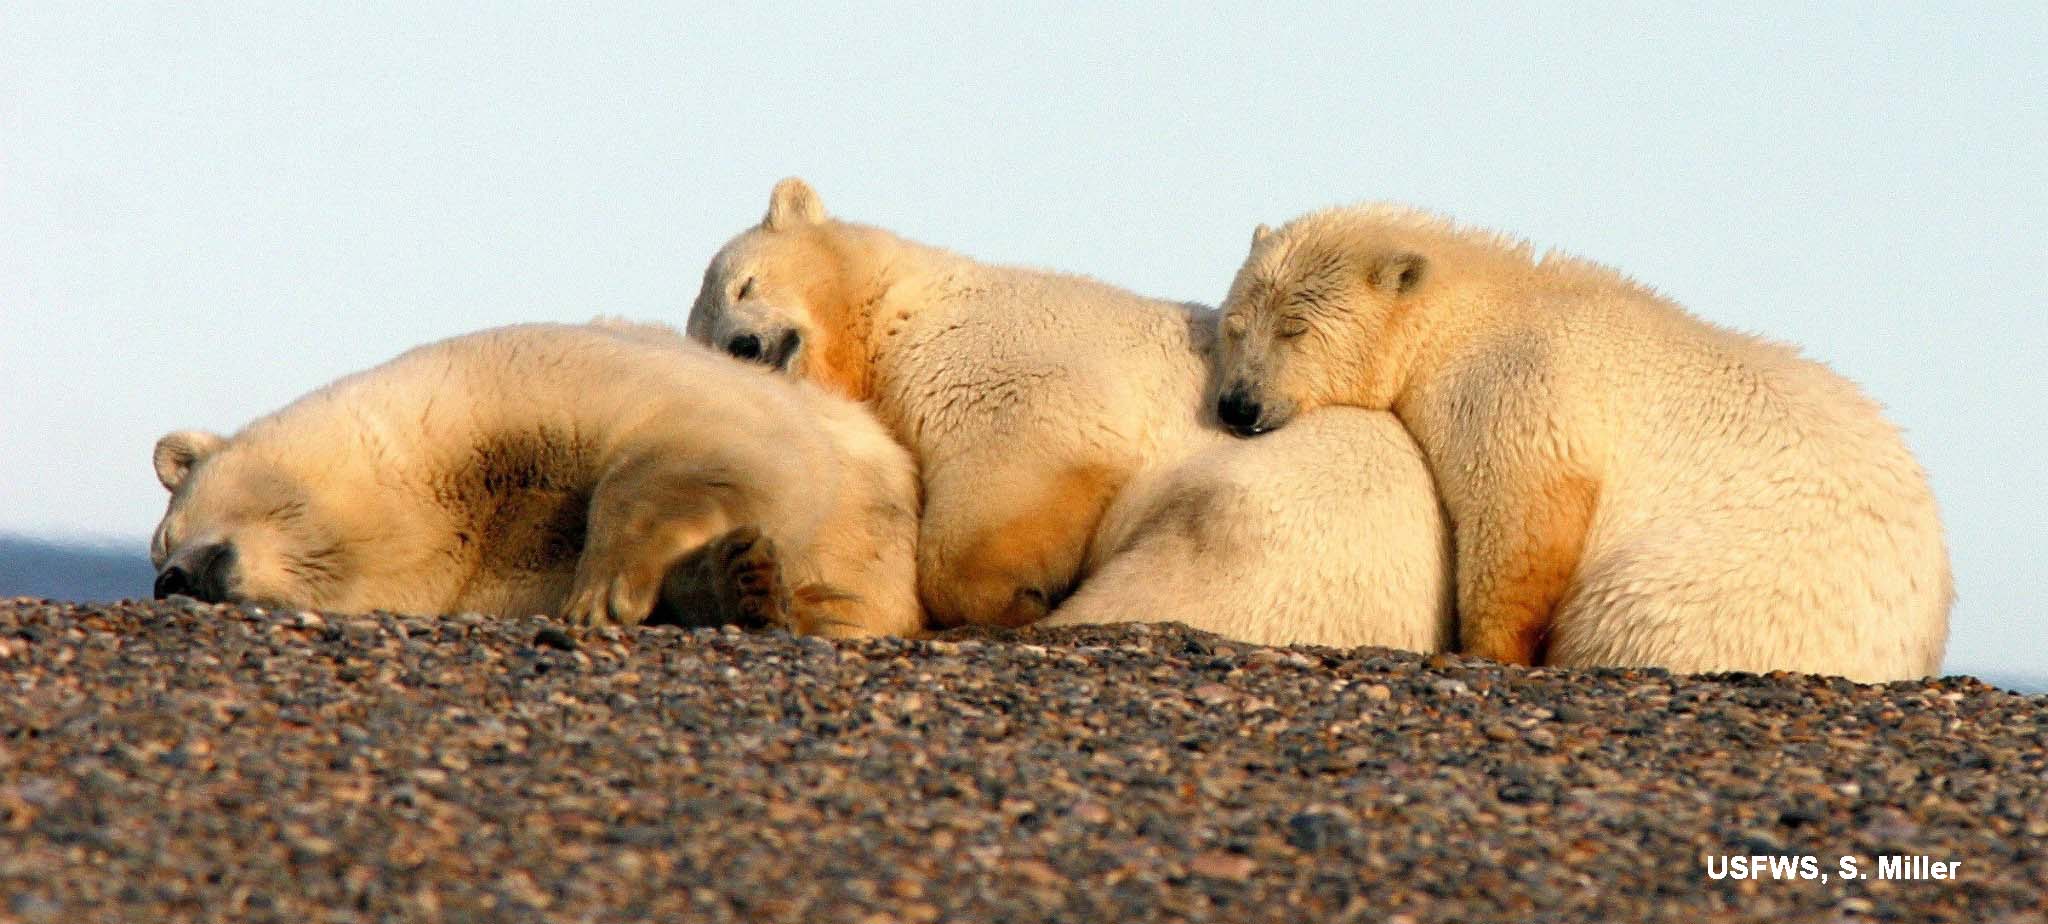 polarbears-arcticnatlwildliferefuge-suzannemiller-usfws_labeled_sm